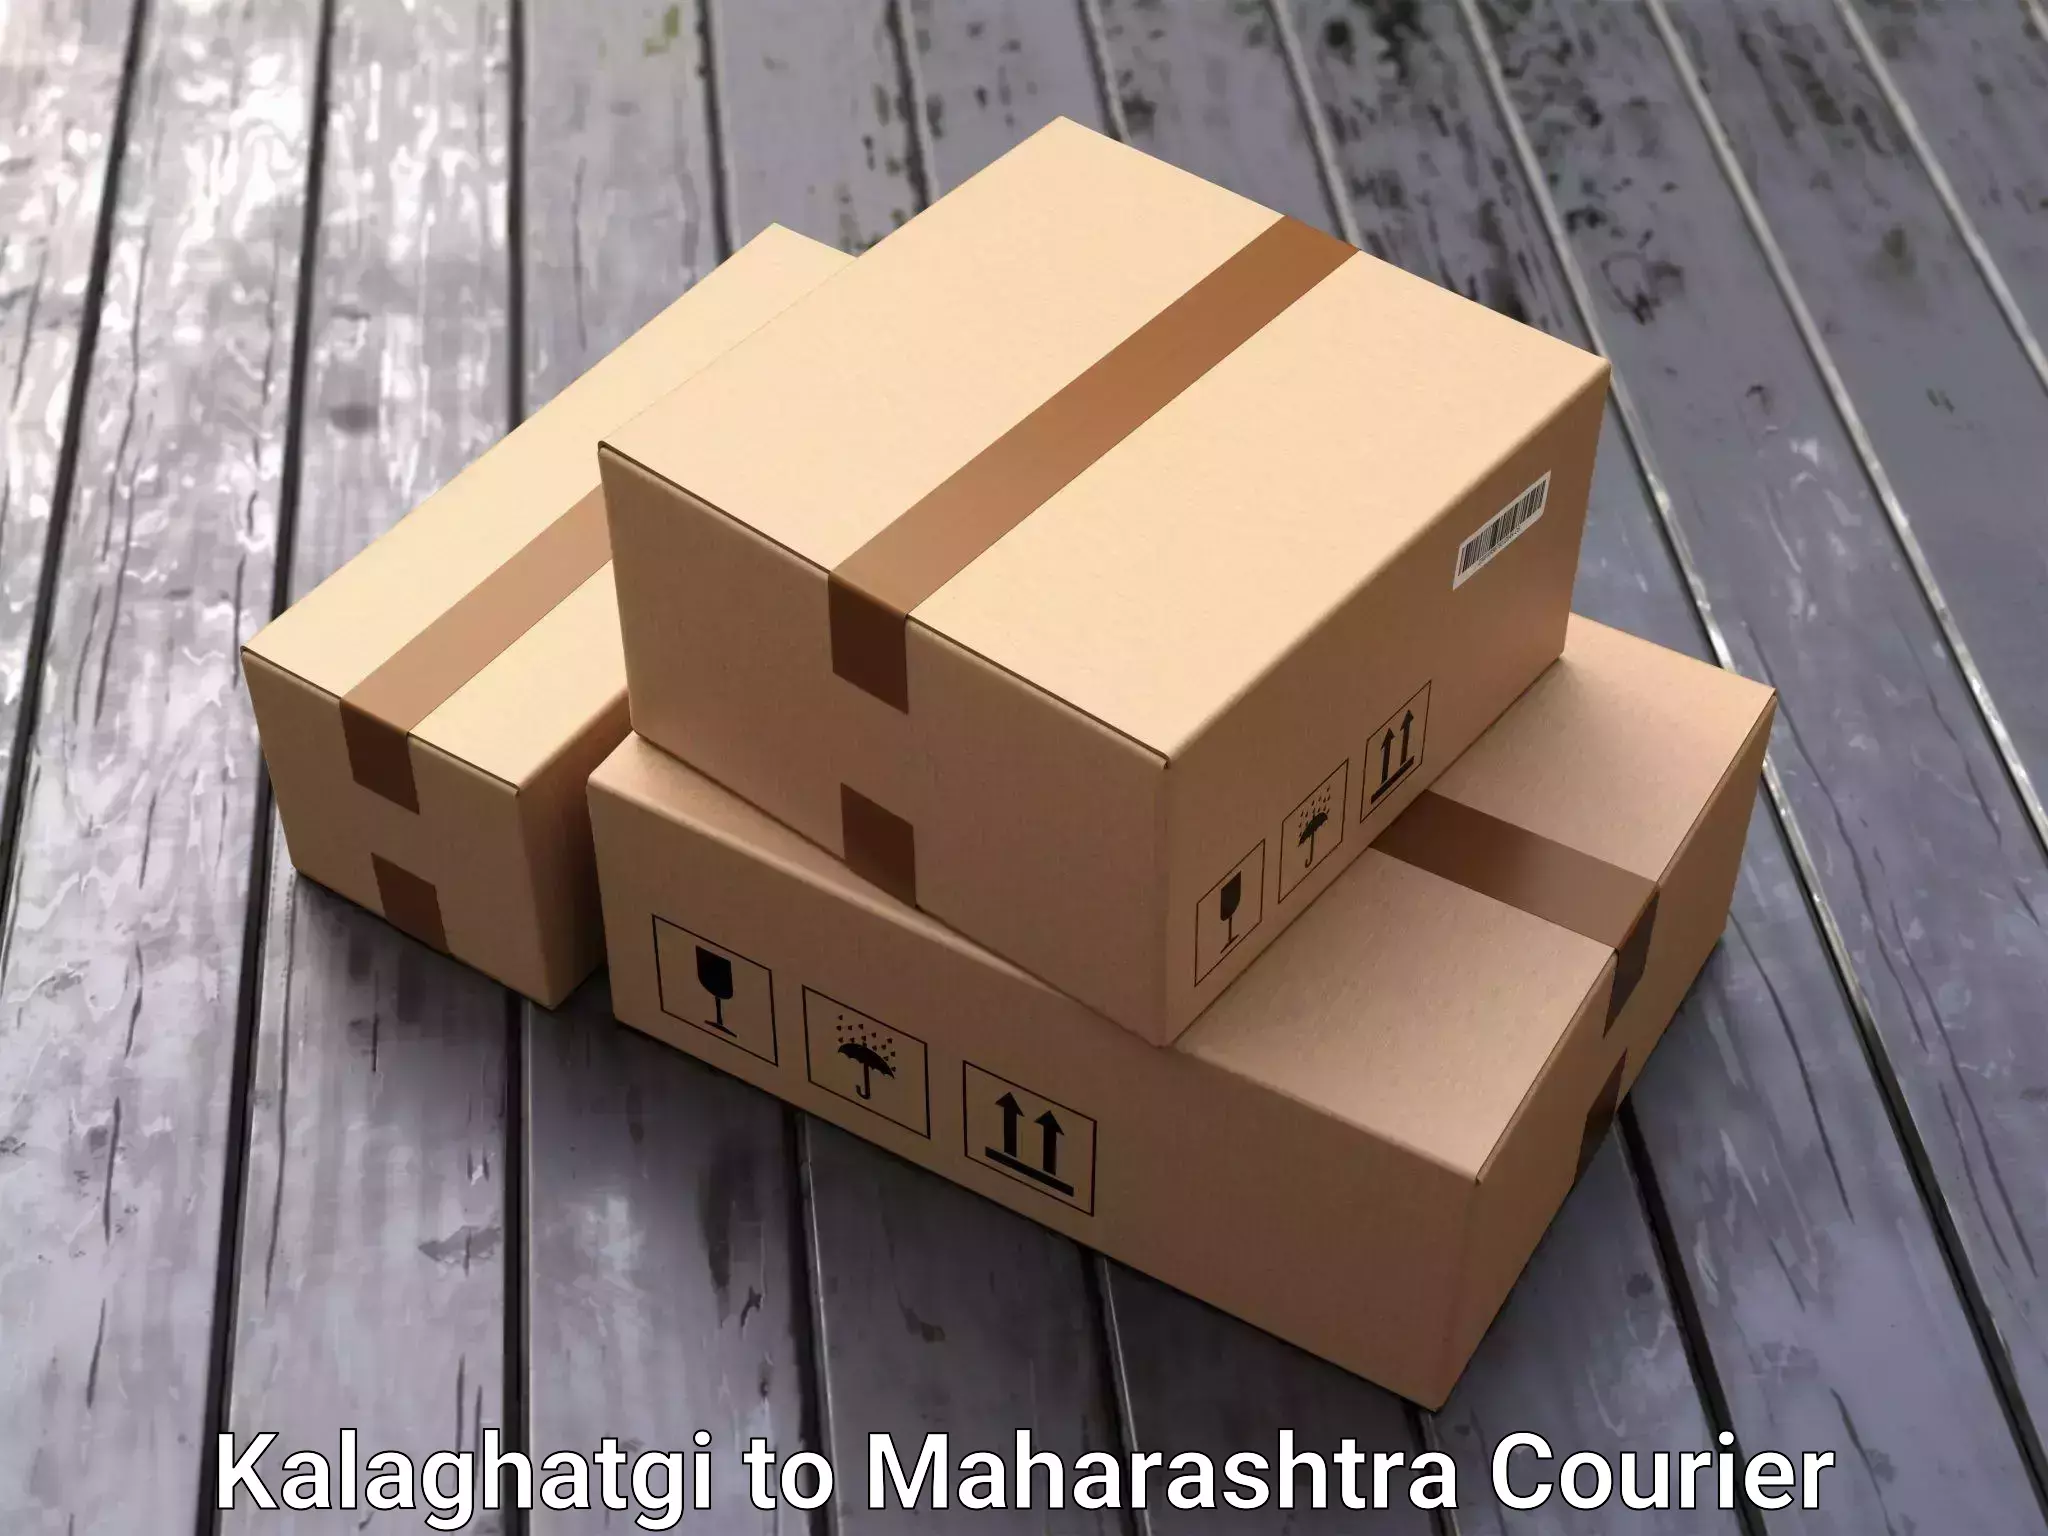 Furniture transport solutions Kalaghatgi to Umarkhed